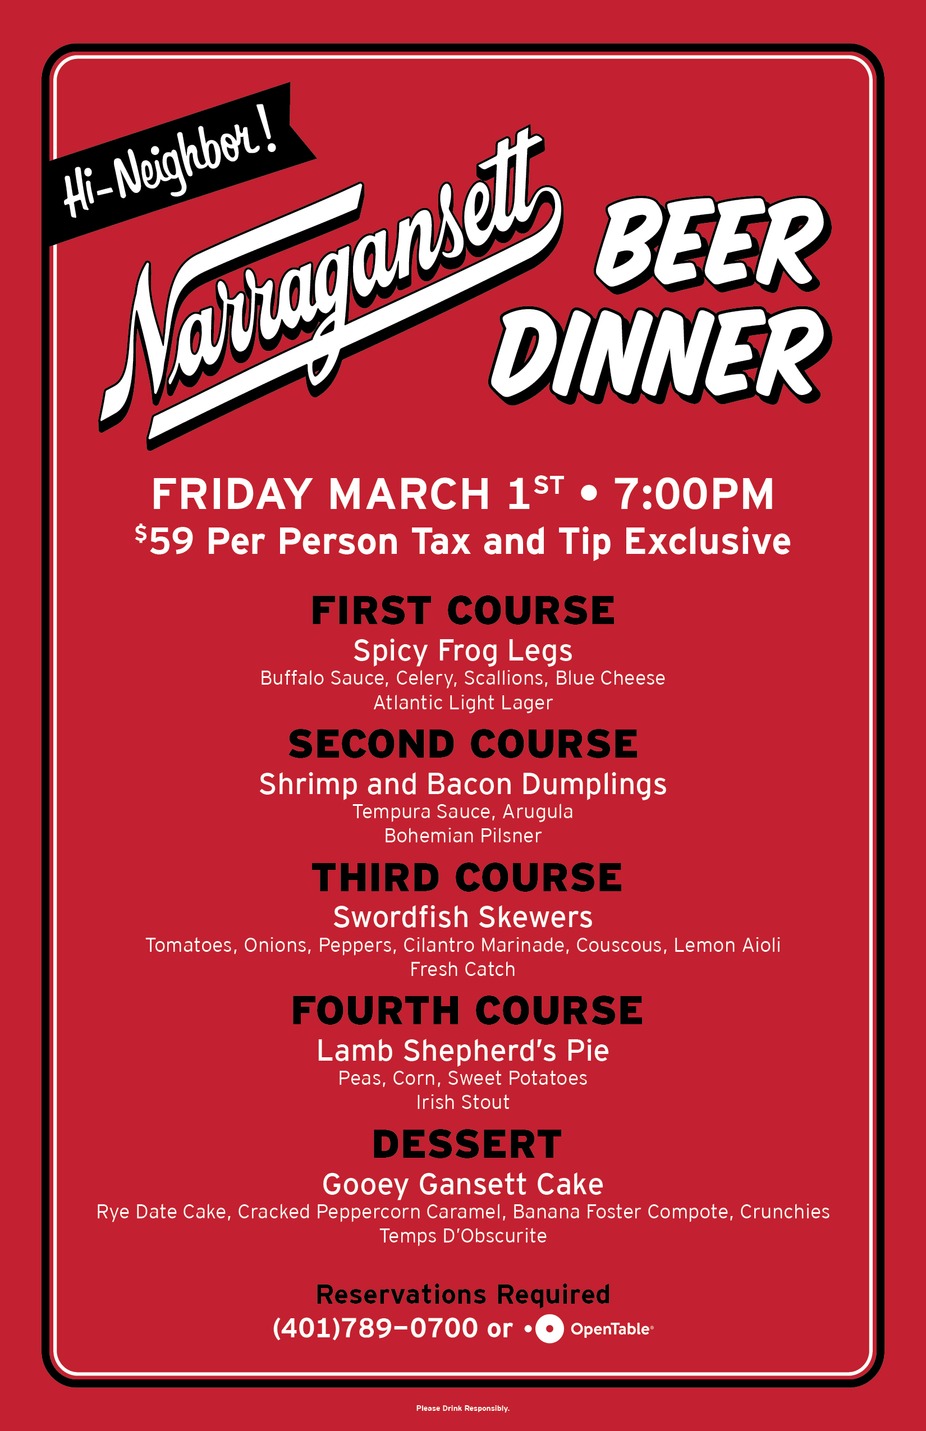 Narragansett Beer Dinner event photo